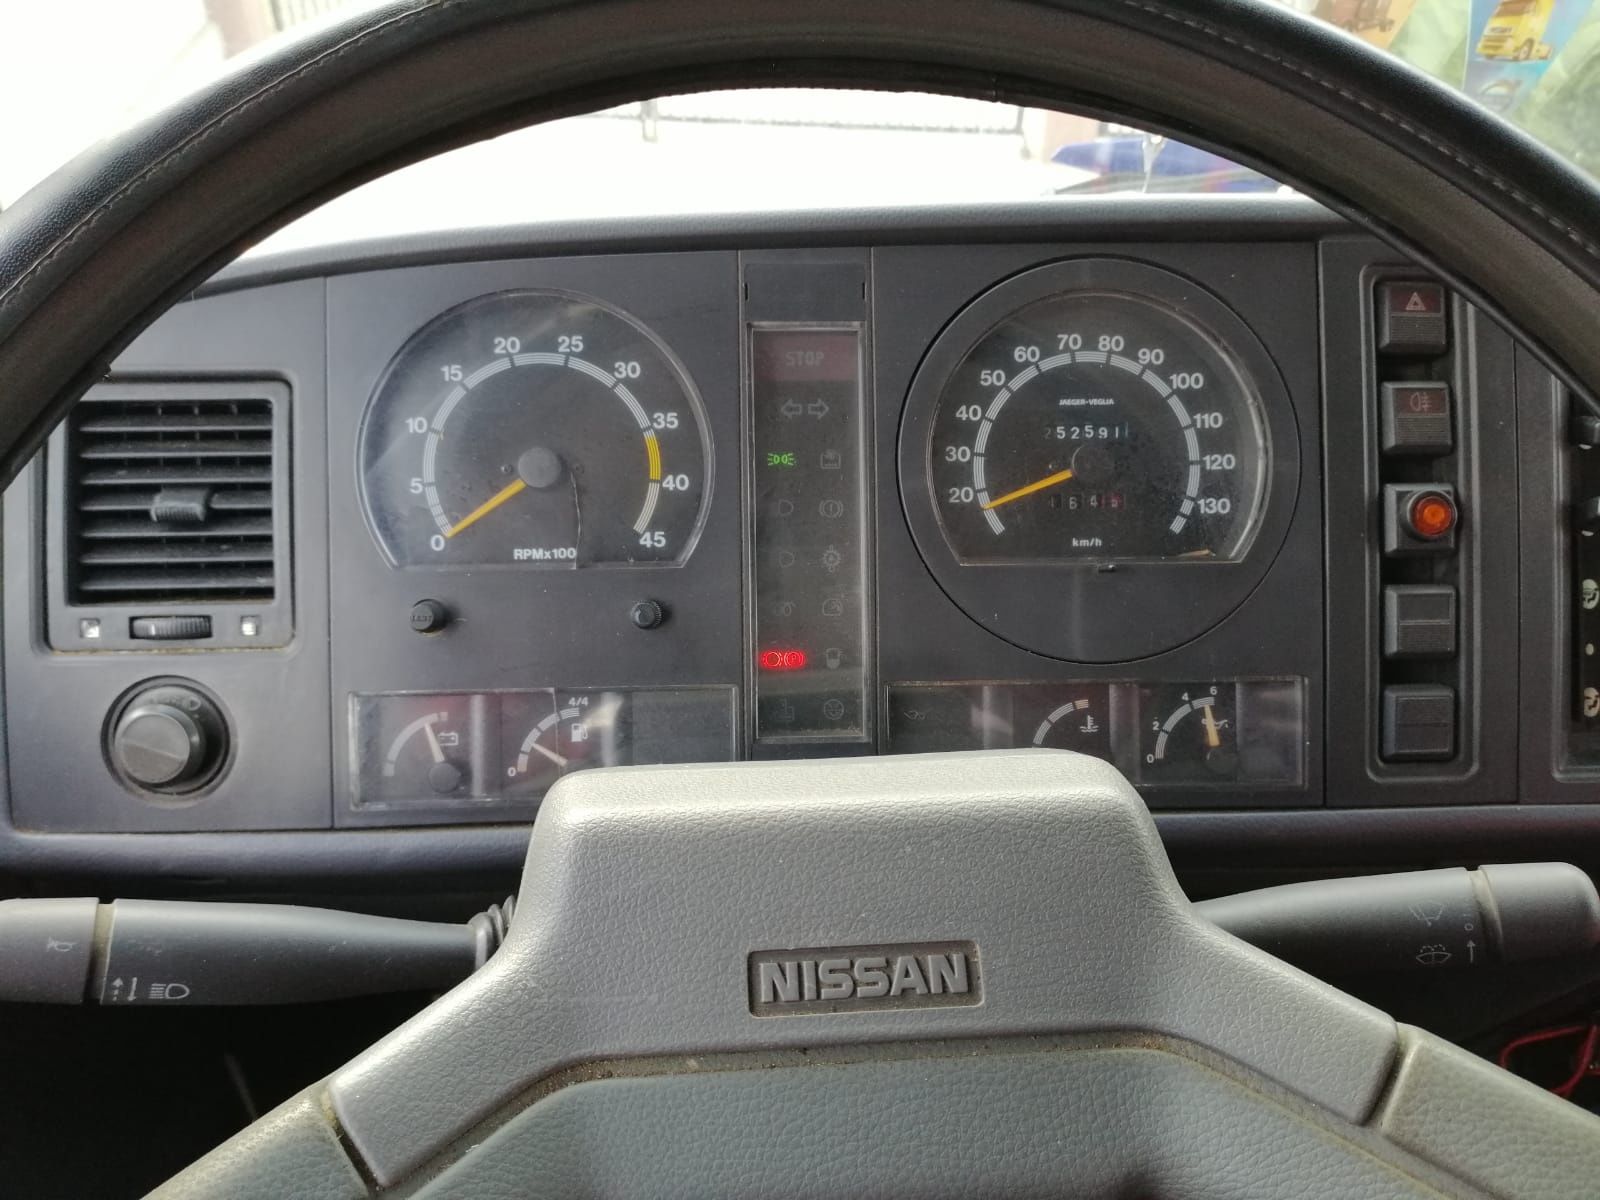 Nissan L35 autoutilitara